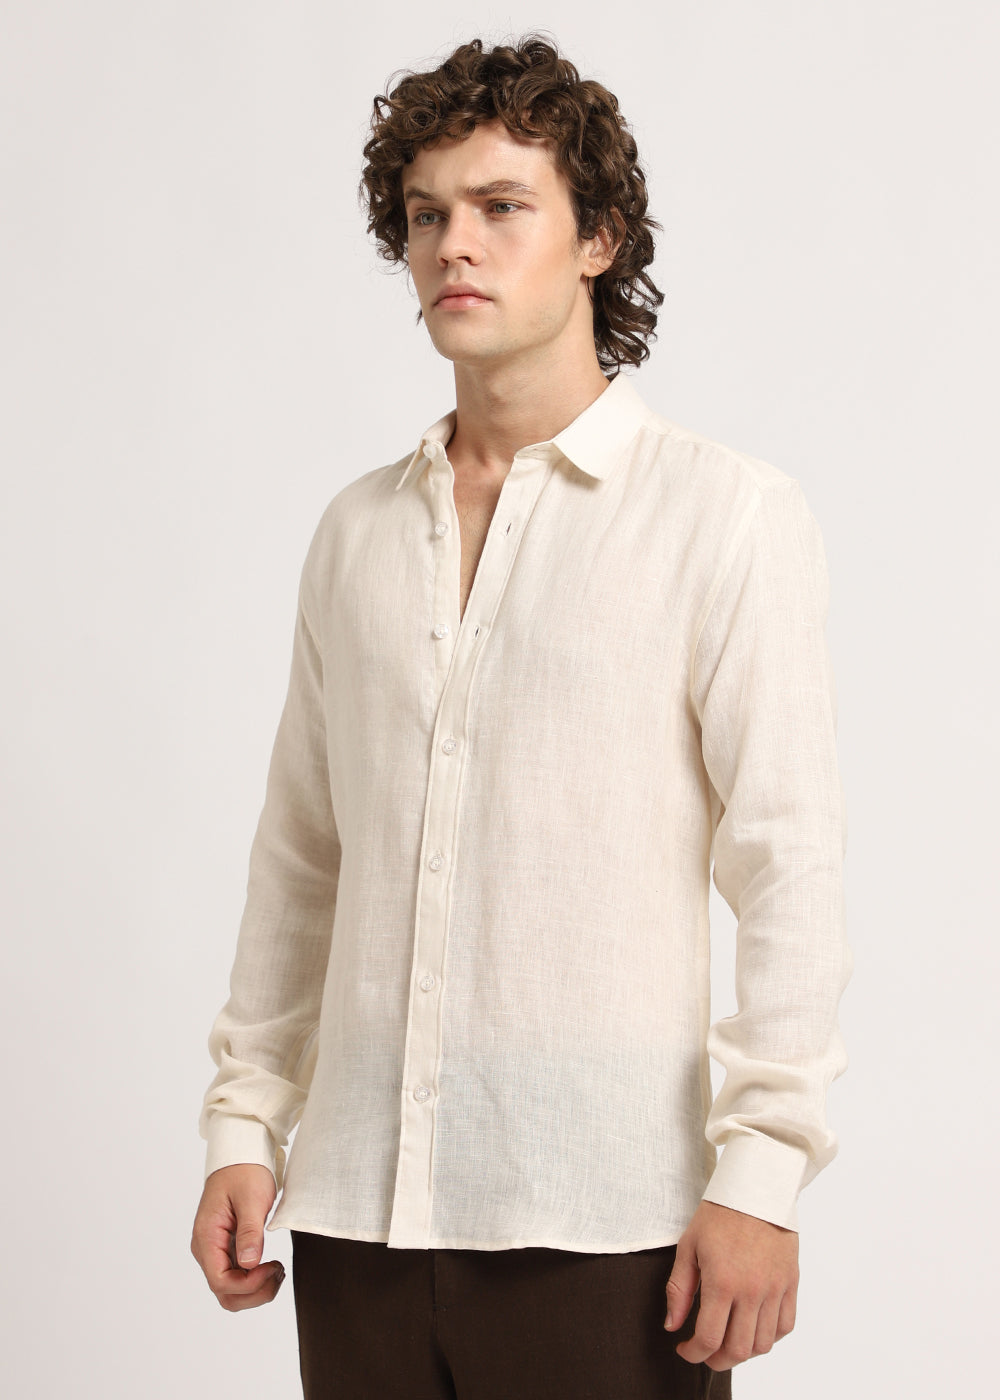 Classic Cream Linen Shirt